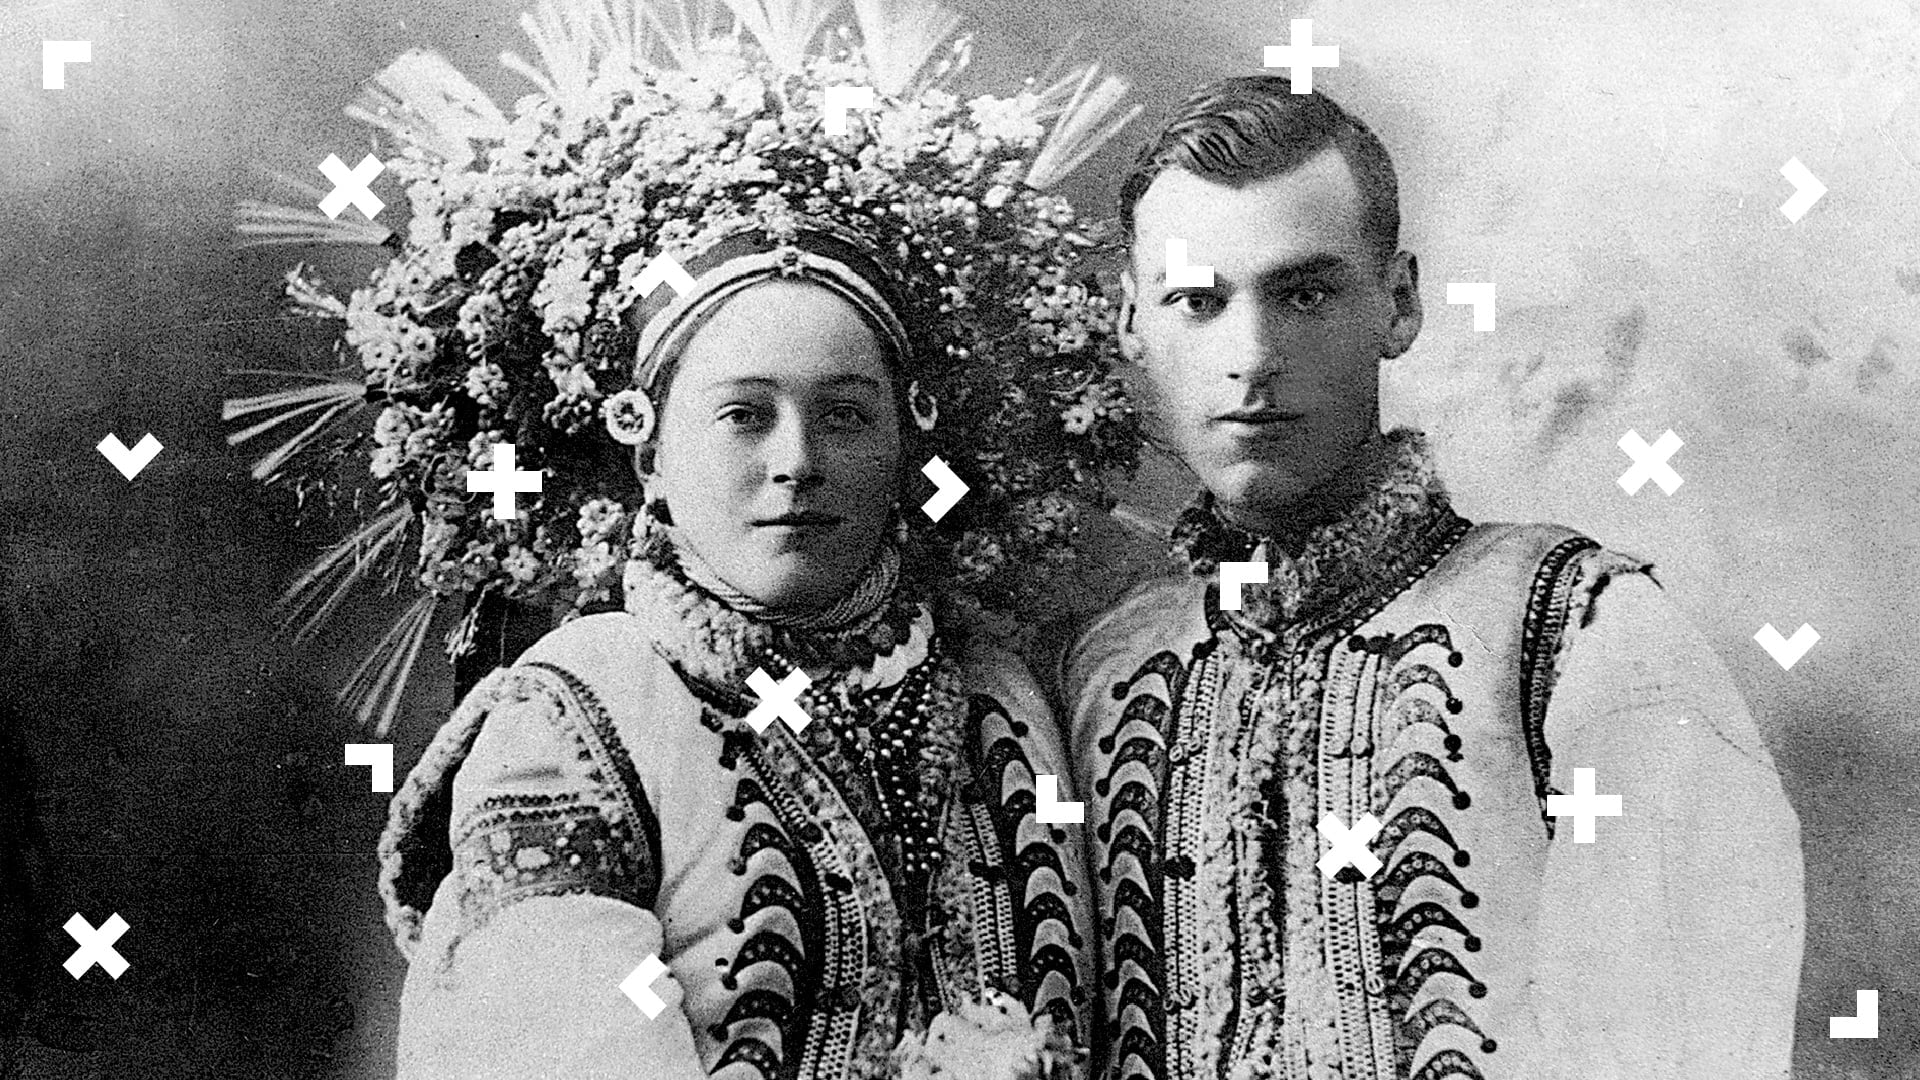 Czarno-biała fotografia kobiety i mężczyzny w tradycyjnym stroju ludowym Ukrainy.